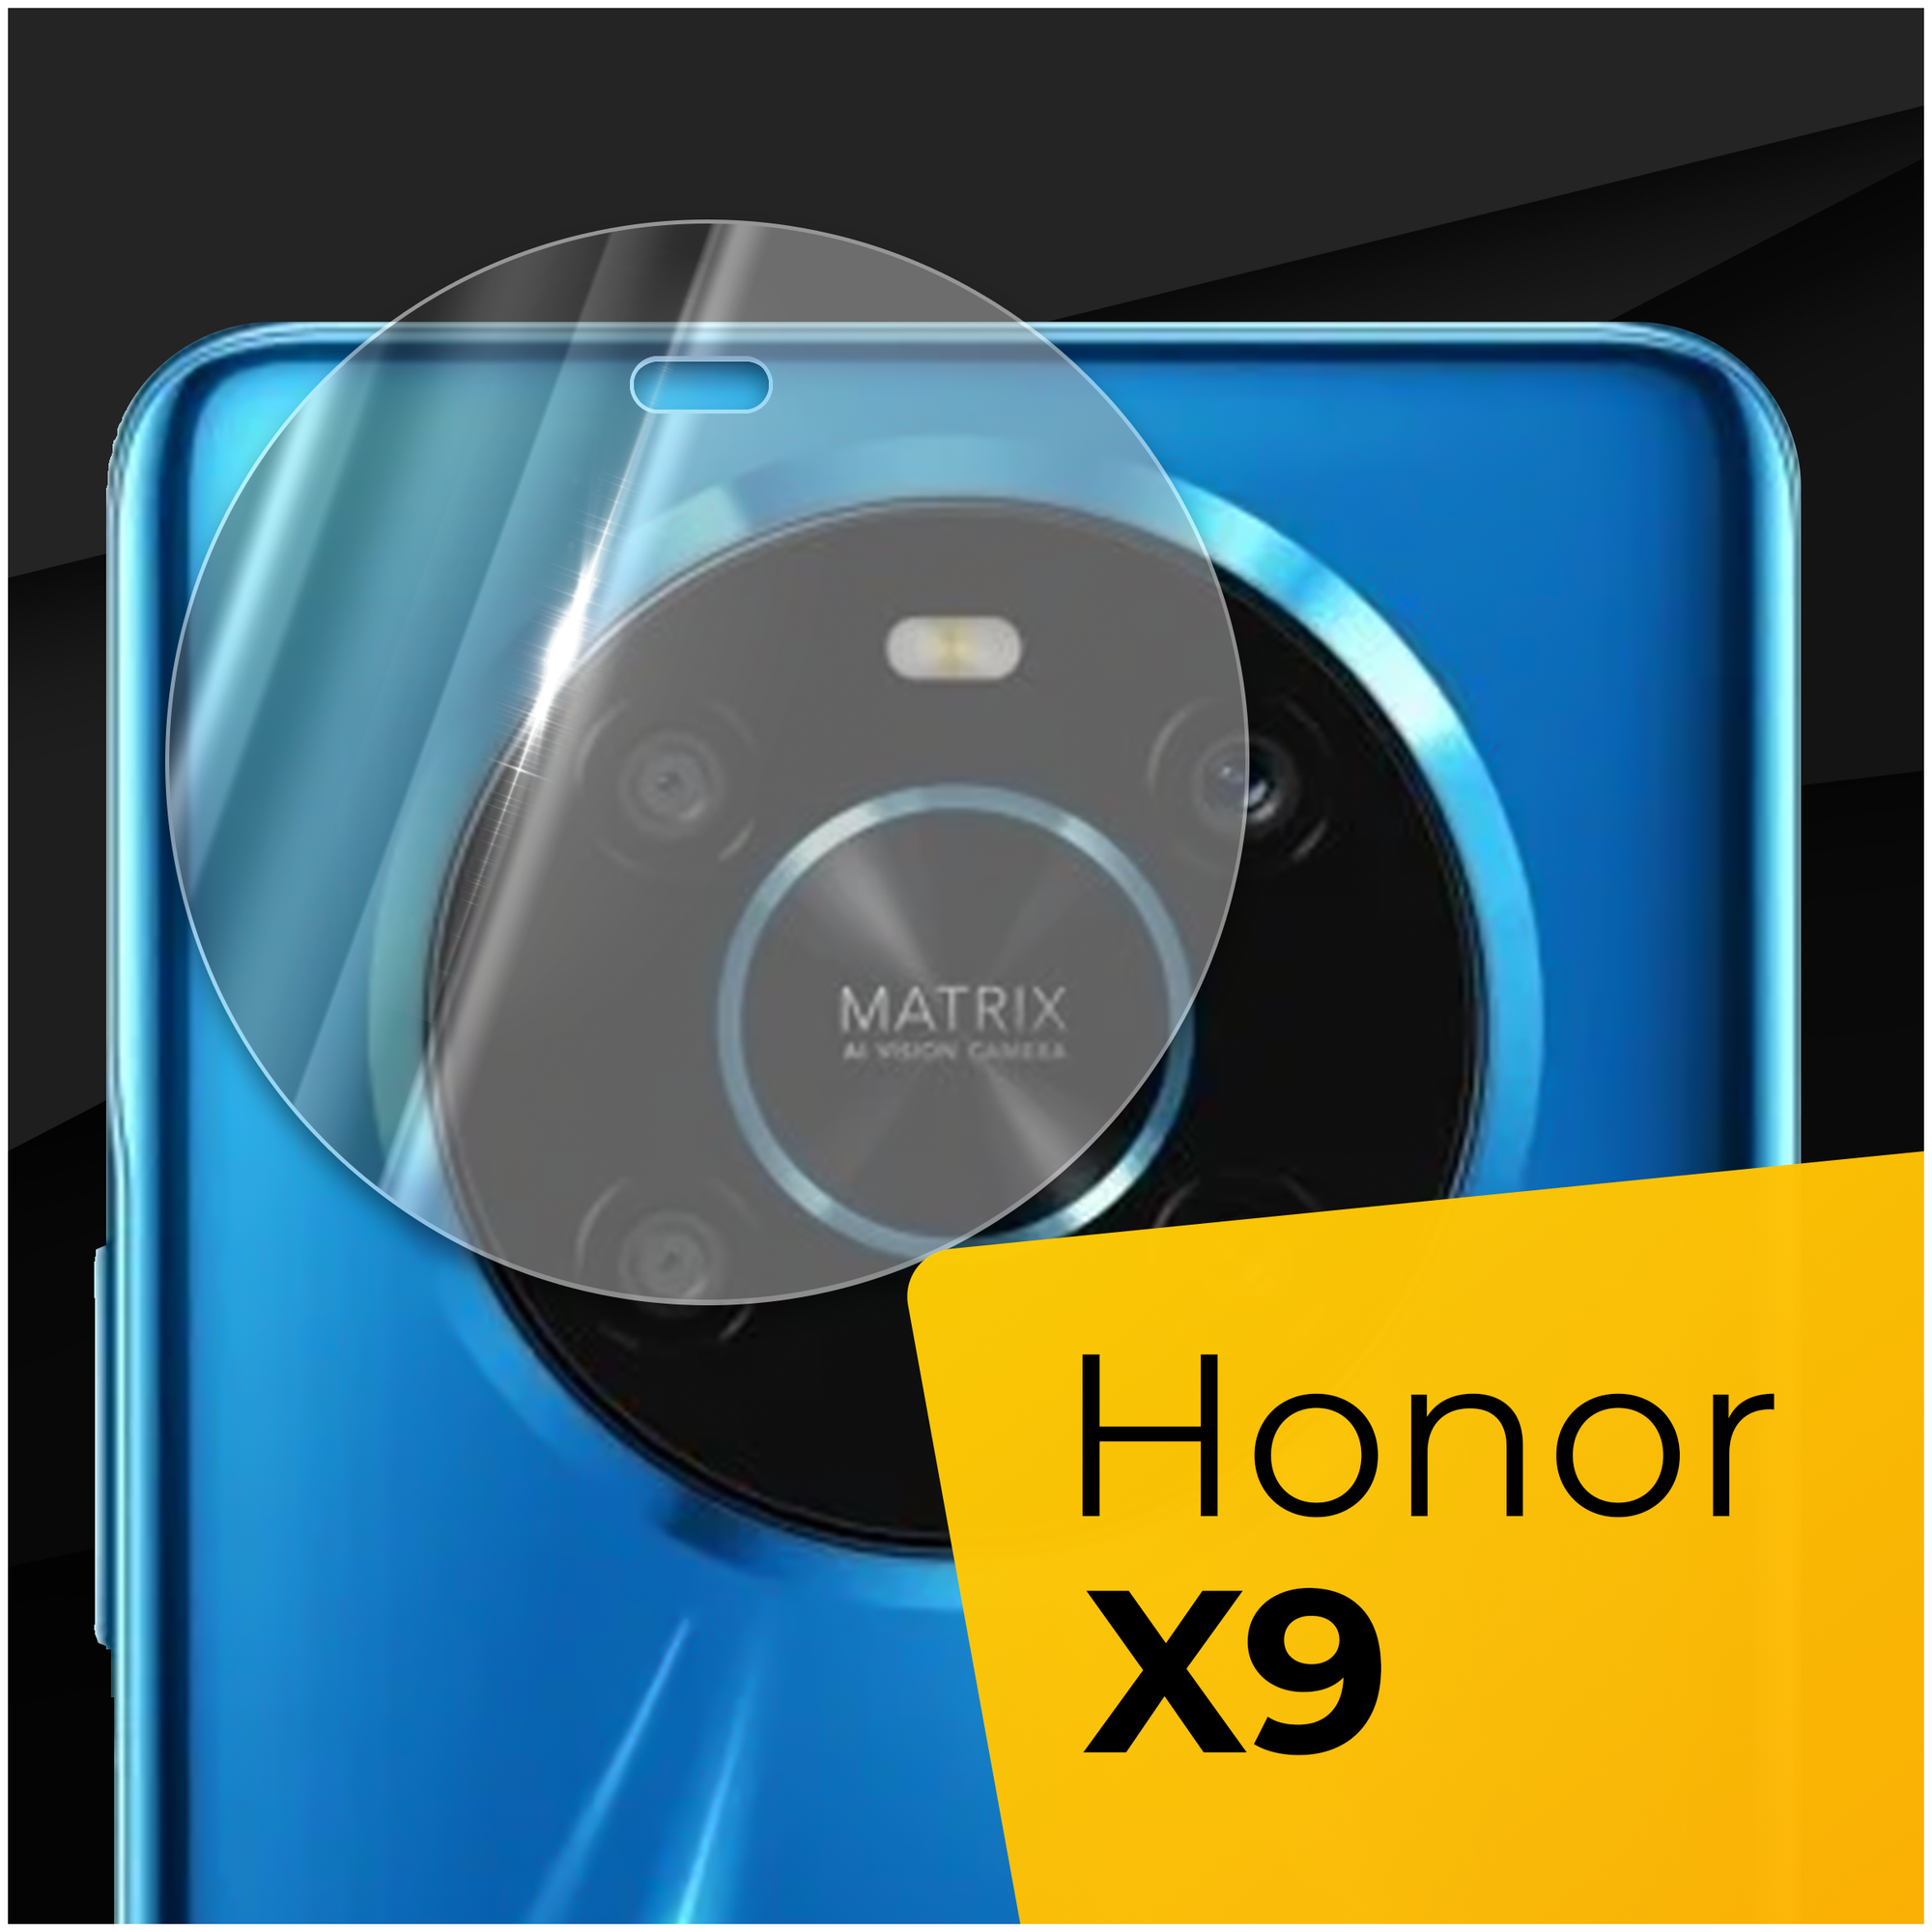 Противоударное защитное стекло для камеры телефона Huawei Honor X9 / Тонкое прозрачное стекло на камеру смартфона Хуавей Хонор Х9 / Защита камеры